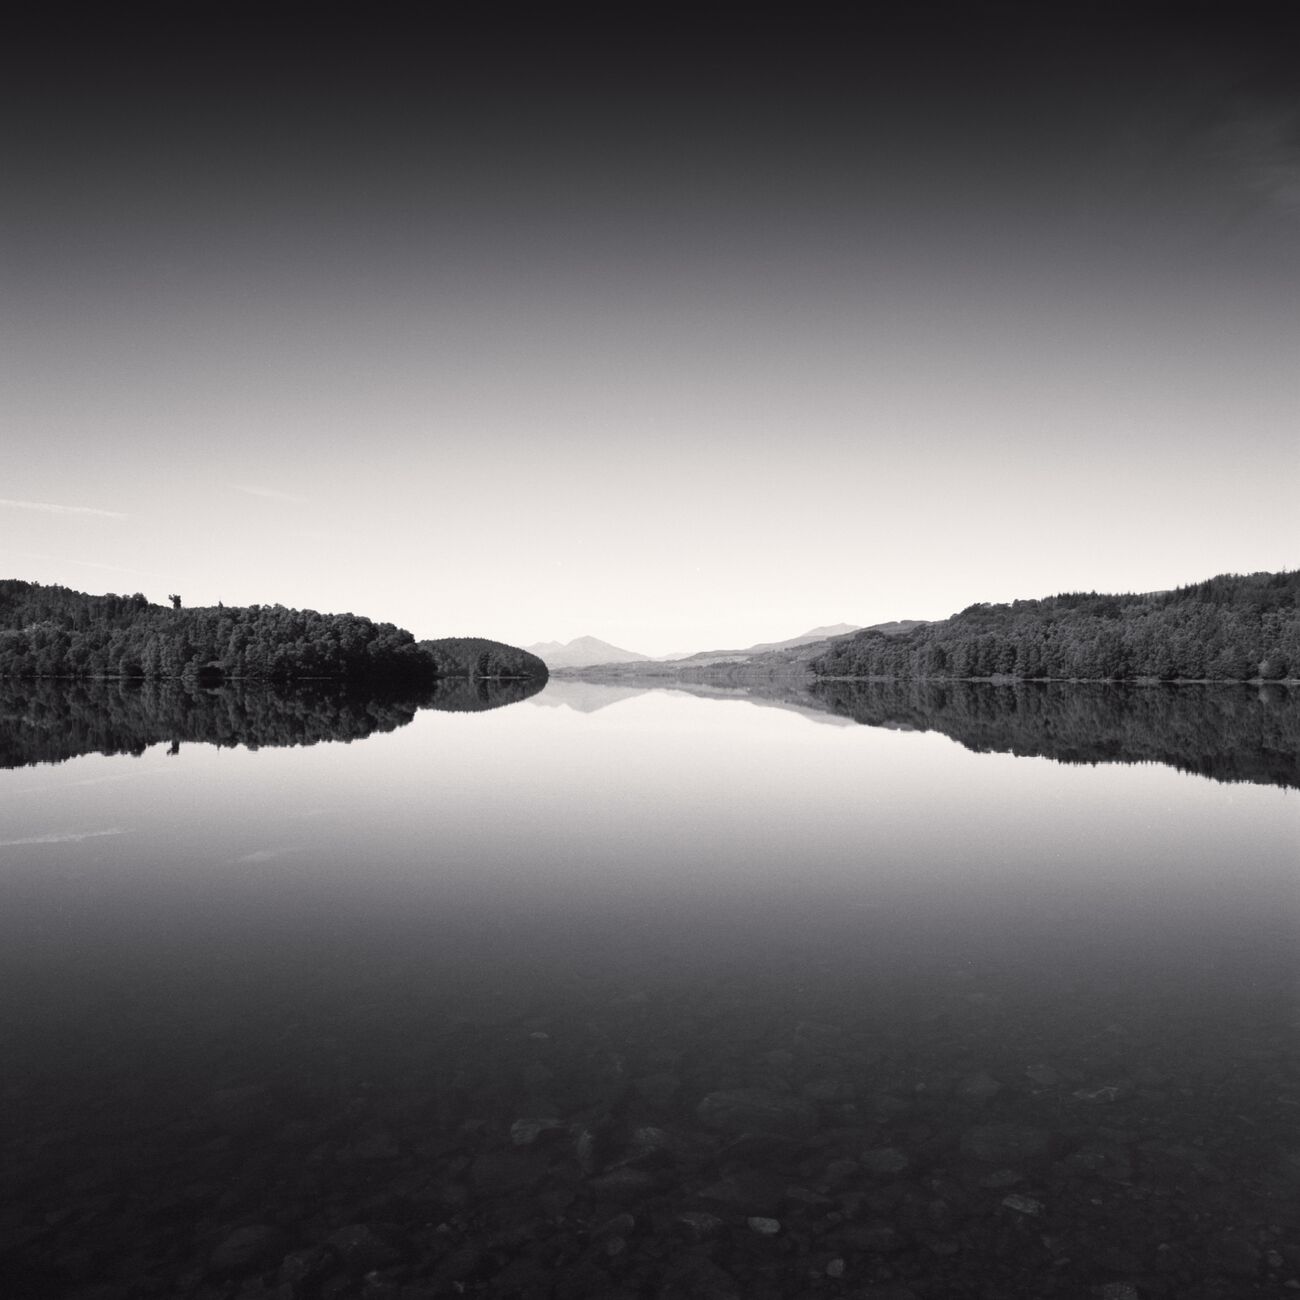 Water Mirror, Loch Garry, Écosse. Août 2022. Ref-11579 - Denis Olivier Photographie